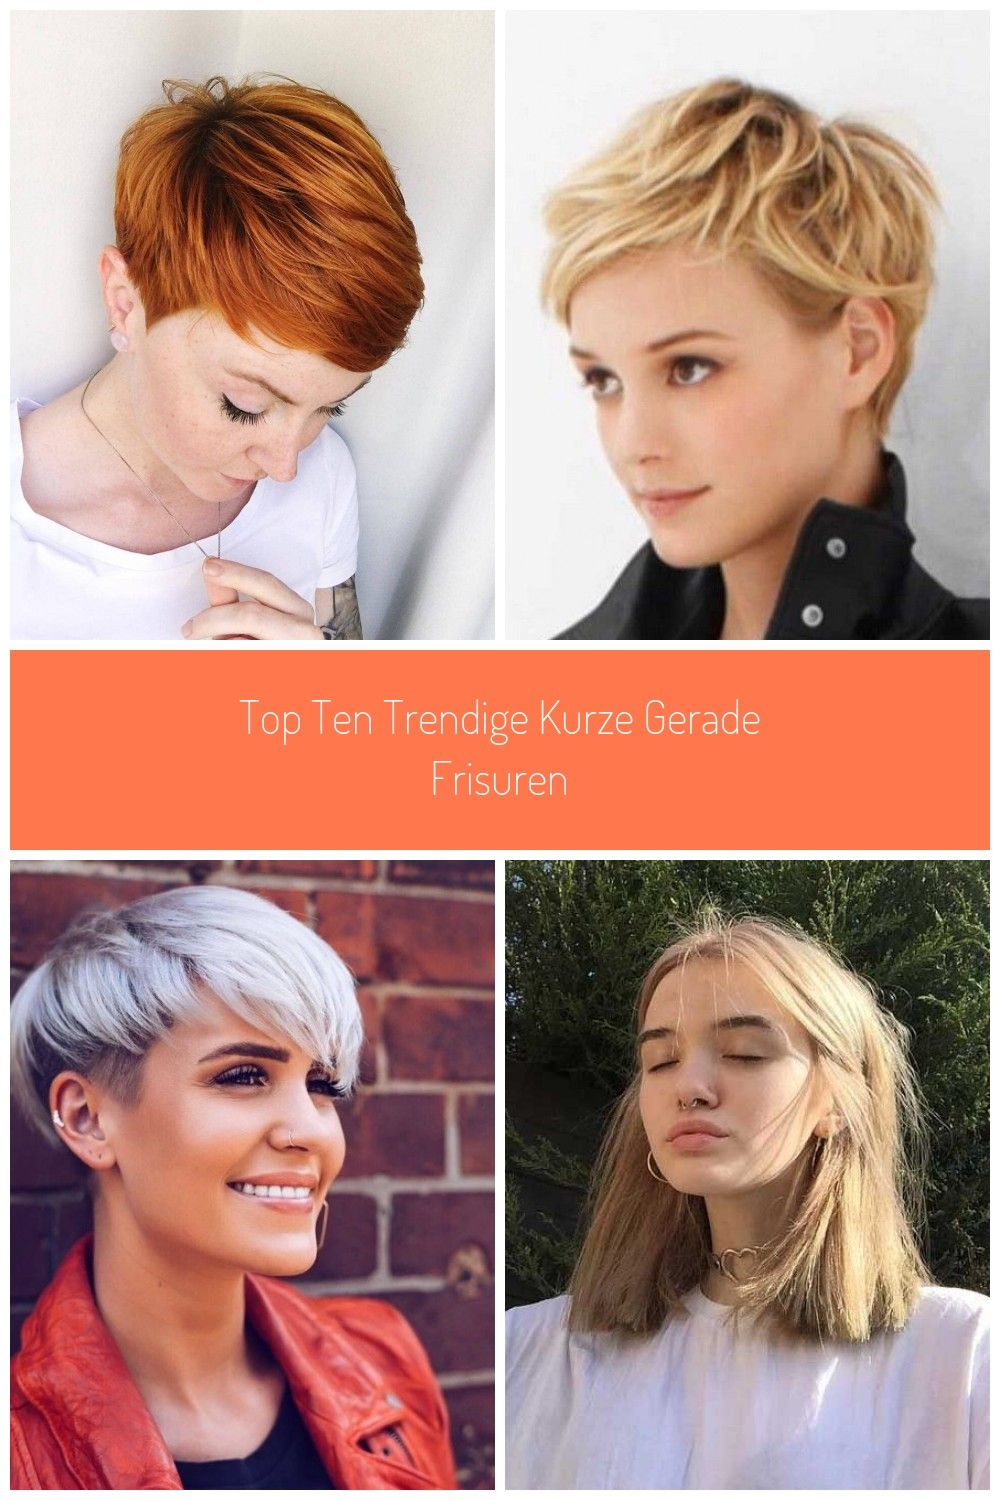 Top-Ten-Trendige-kurze-gerade-Frisuren-frisuren-gerade-kurze-trendige.jpg